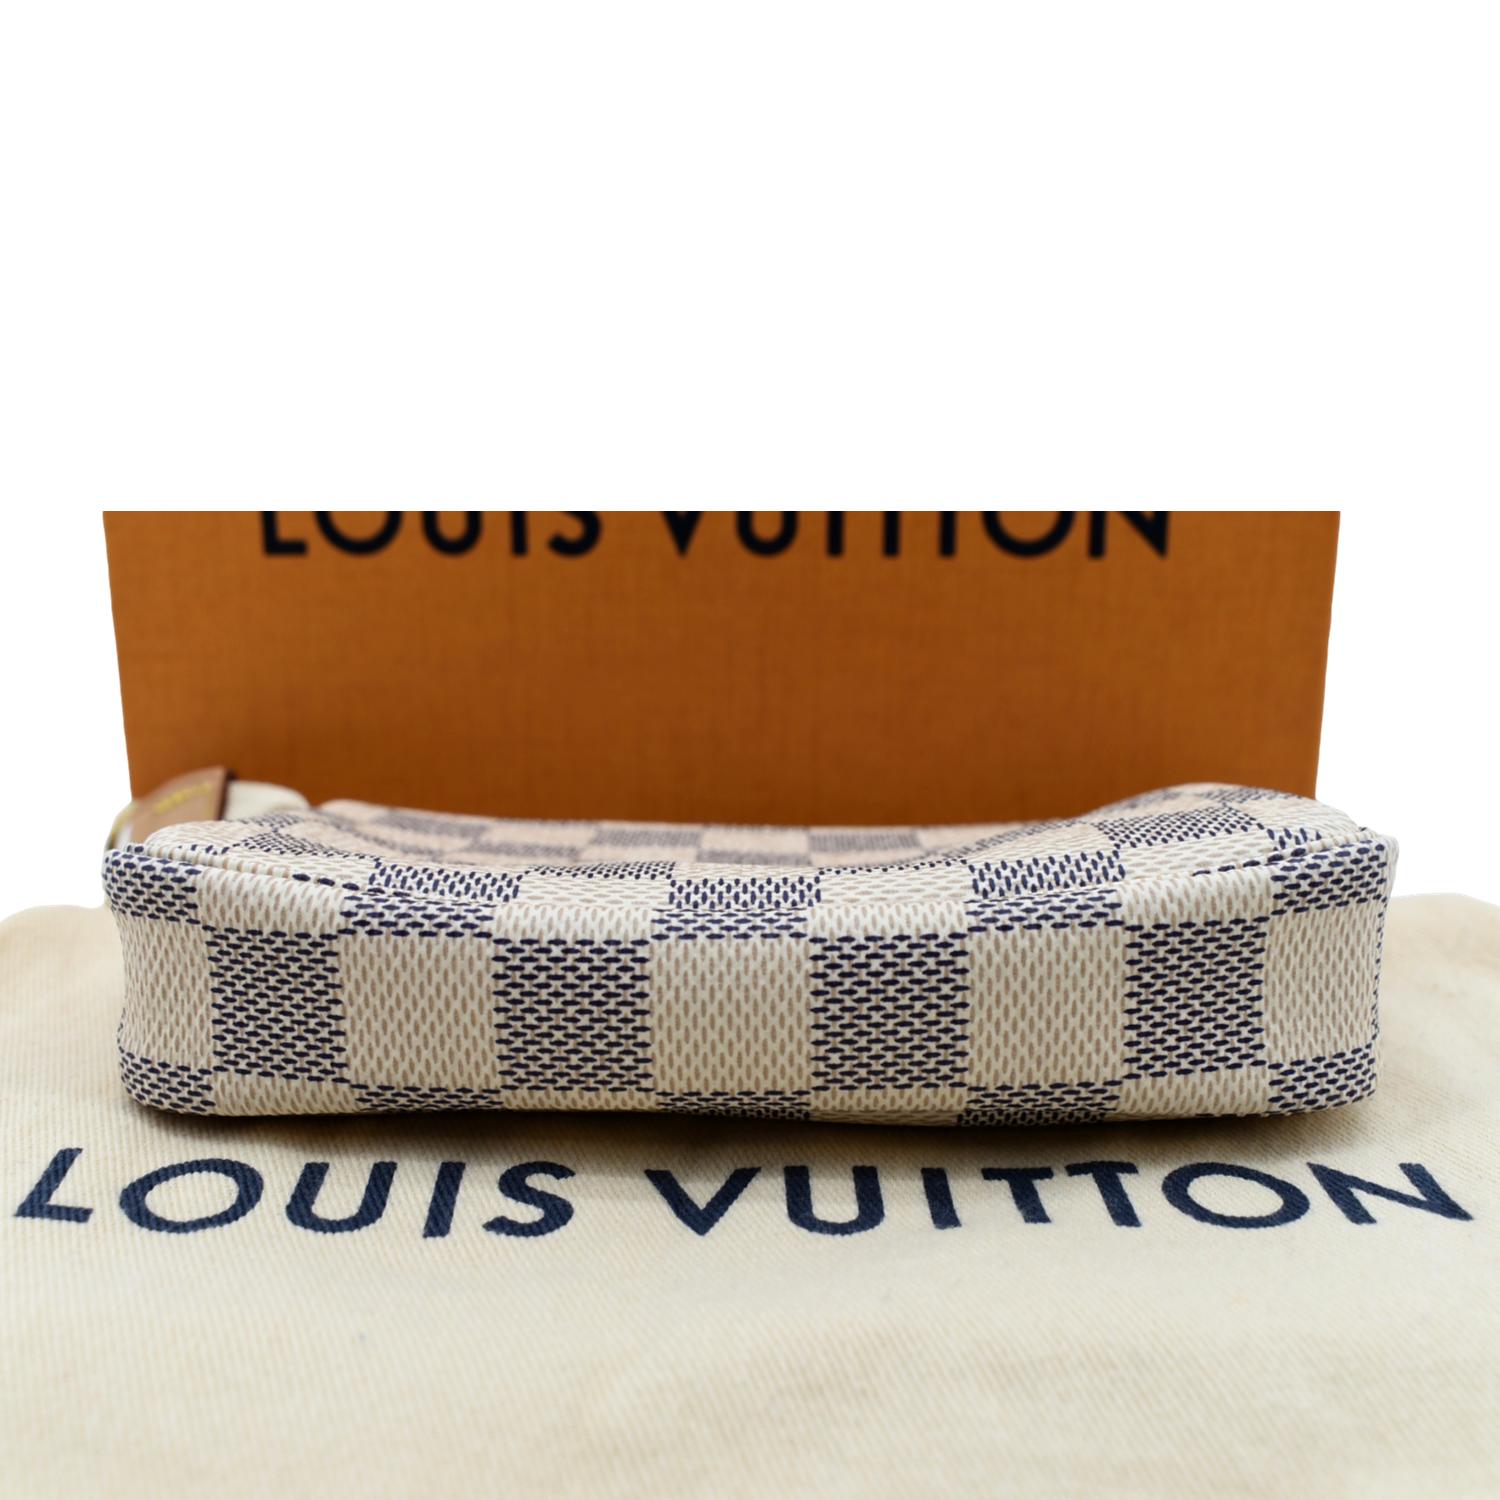 Louis Vuitton, Accessories, New Louis Vuitton Damier Azur Key Pouch